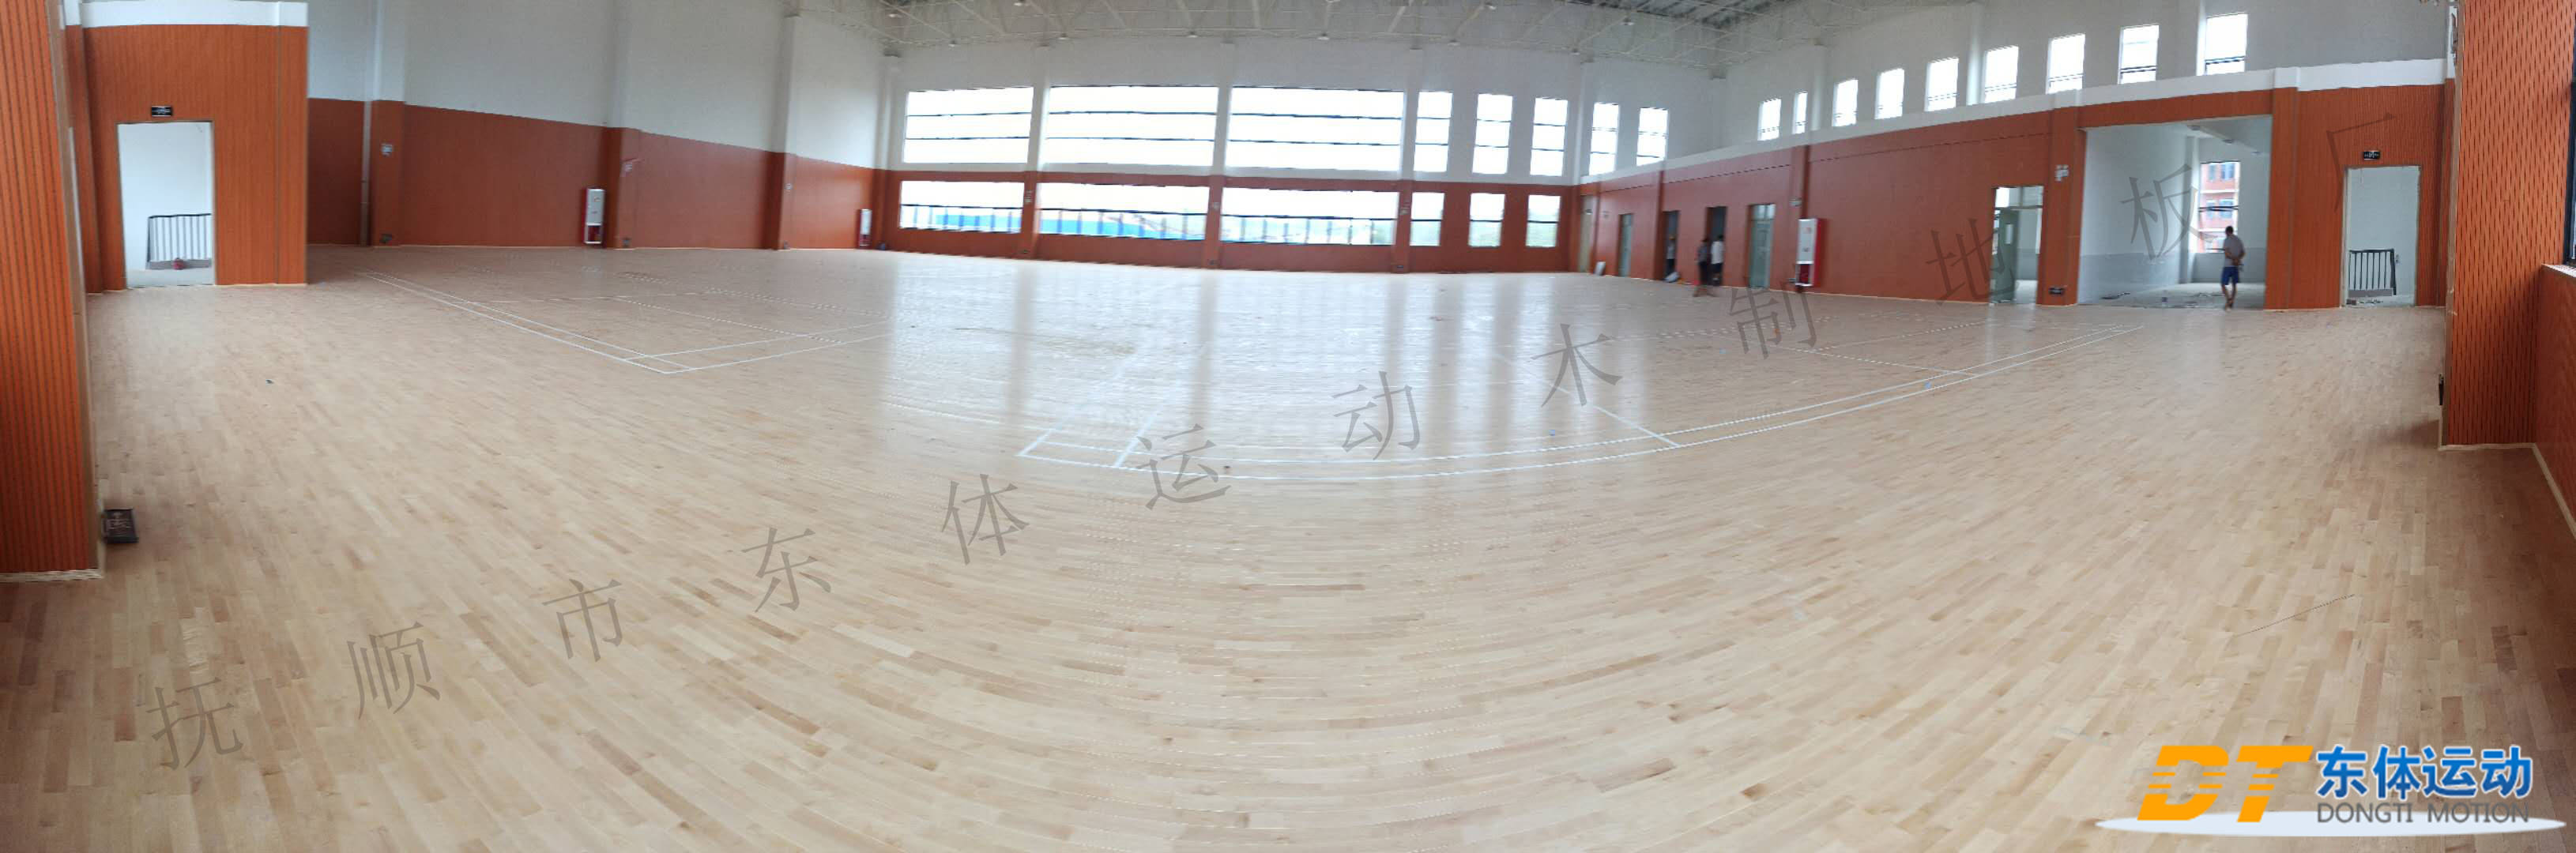 富林地板天料木_木地板篮球场木地板_红利地板 强化 印象木